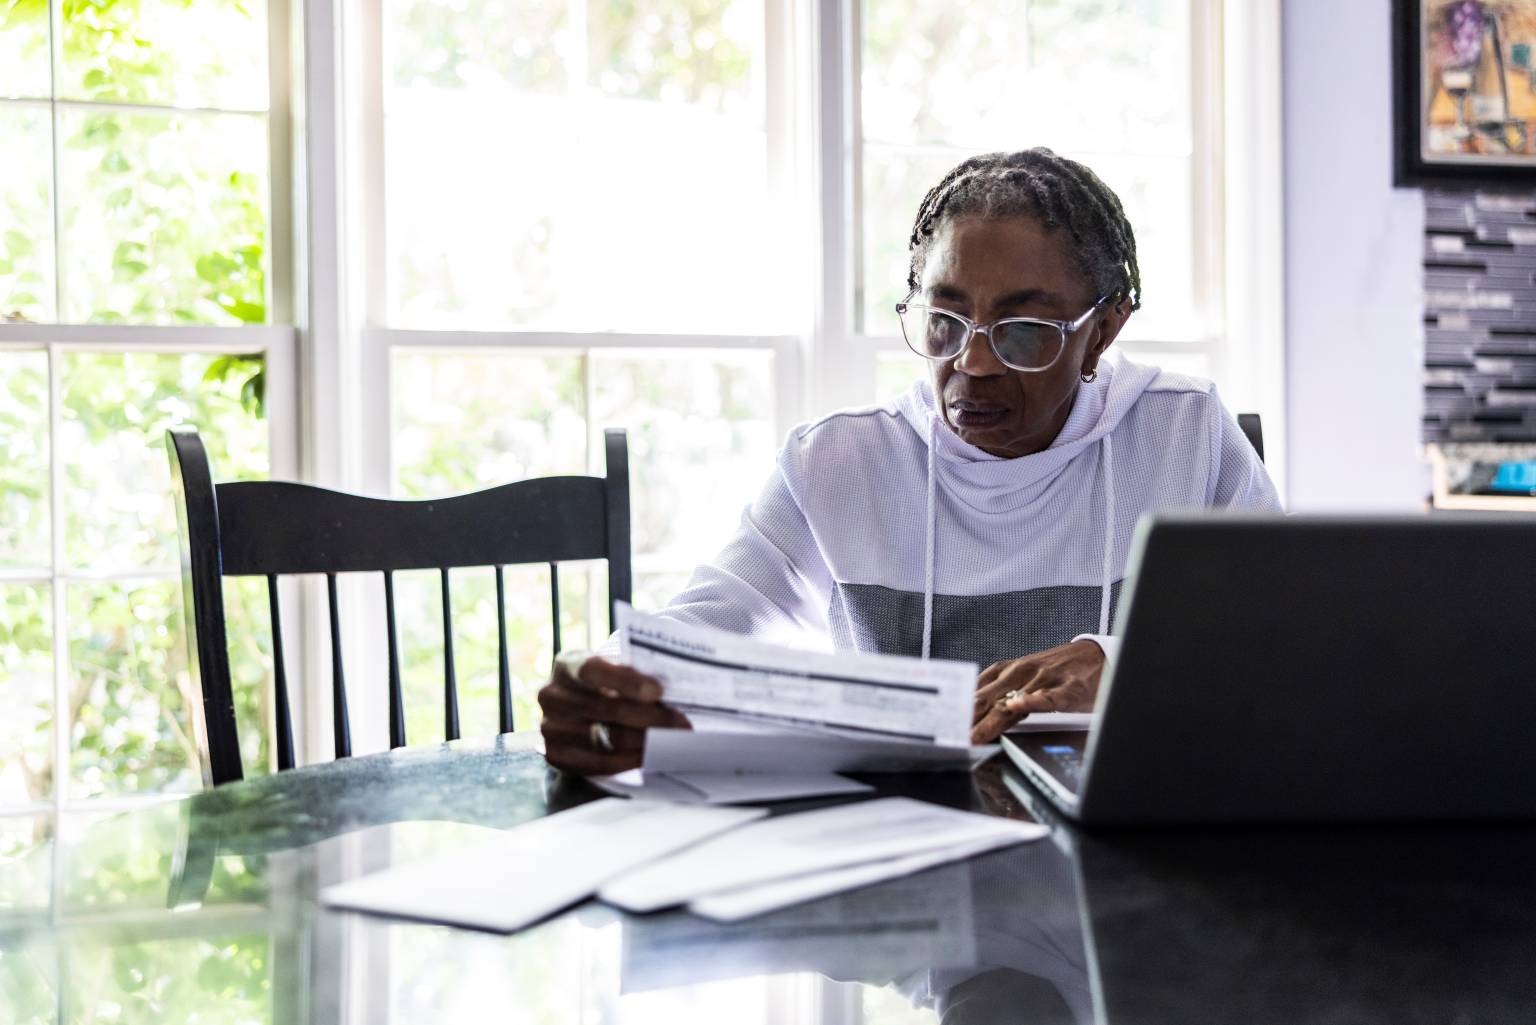 Una persona mayor de edad está sentada en una mesa con una computadora y varios papeles frente a ella.